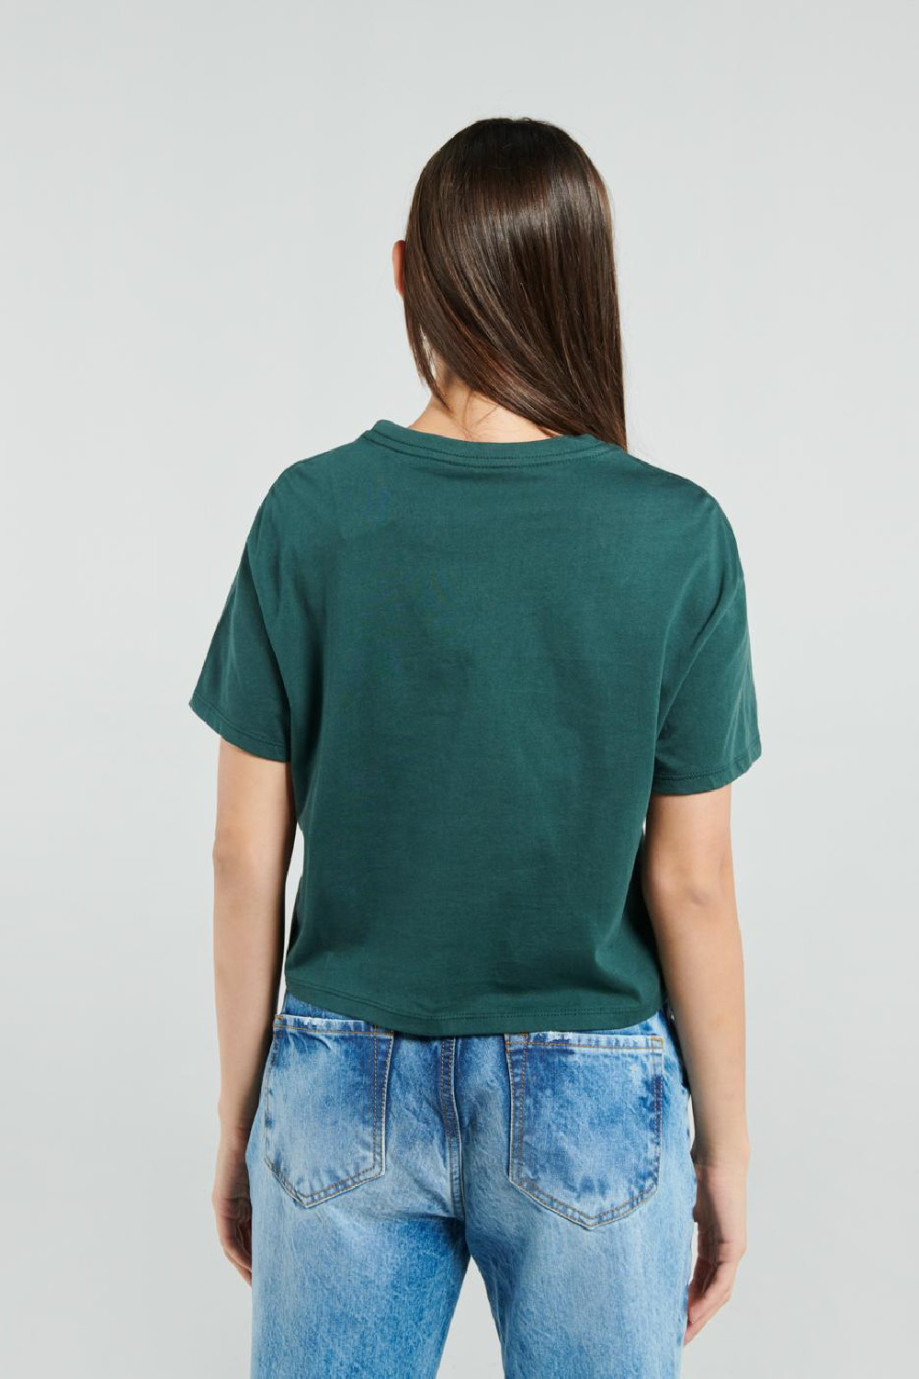 Camiseta en algodón crop top unicolor con cuello redondo